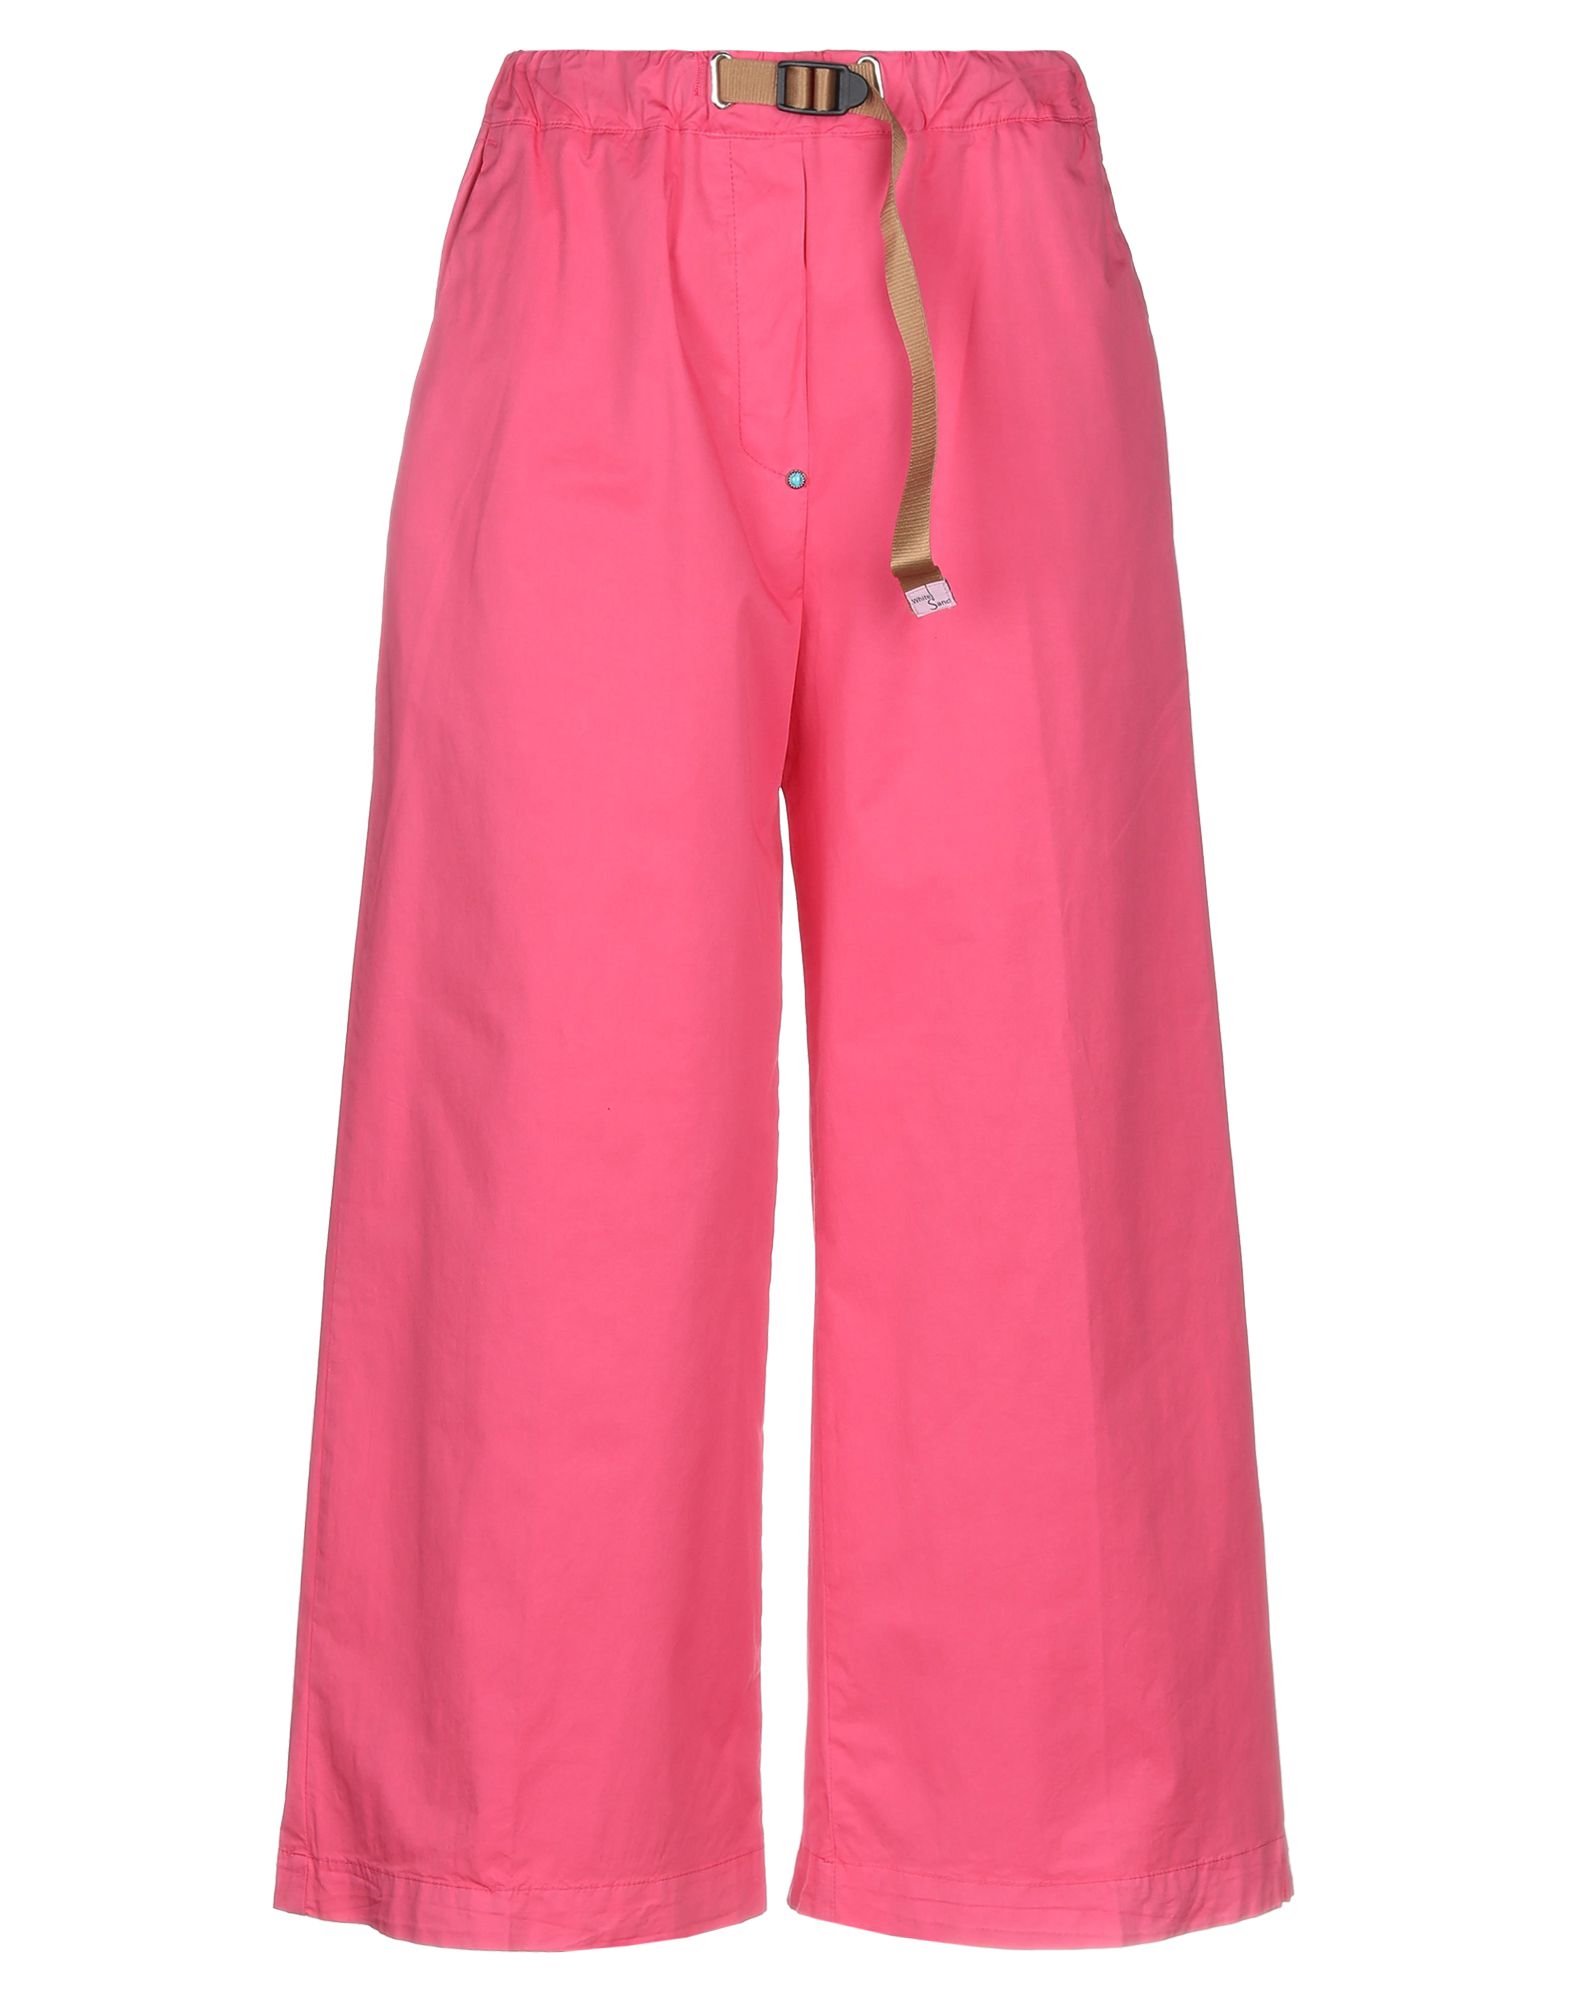 Повседневные брюки  - Розовый,Синий цвет